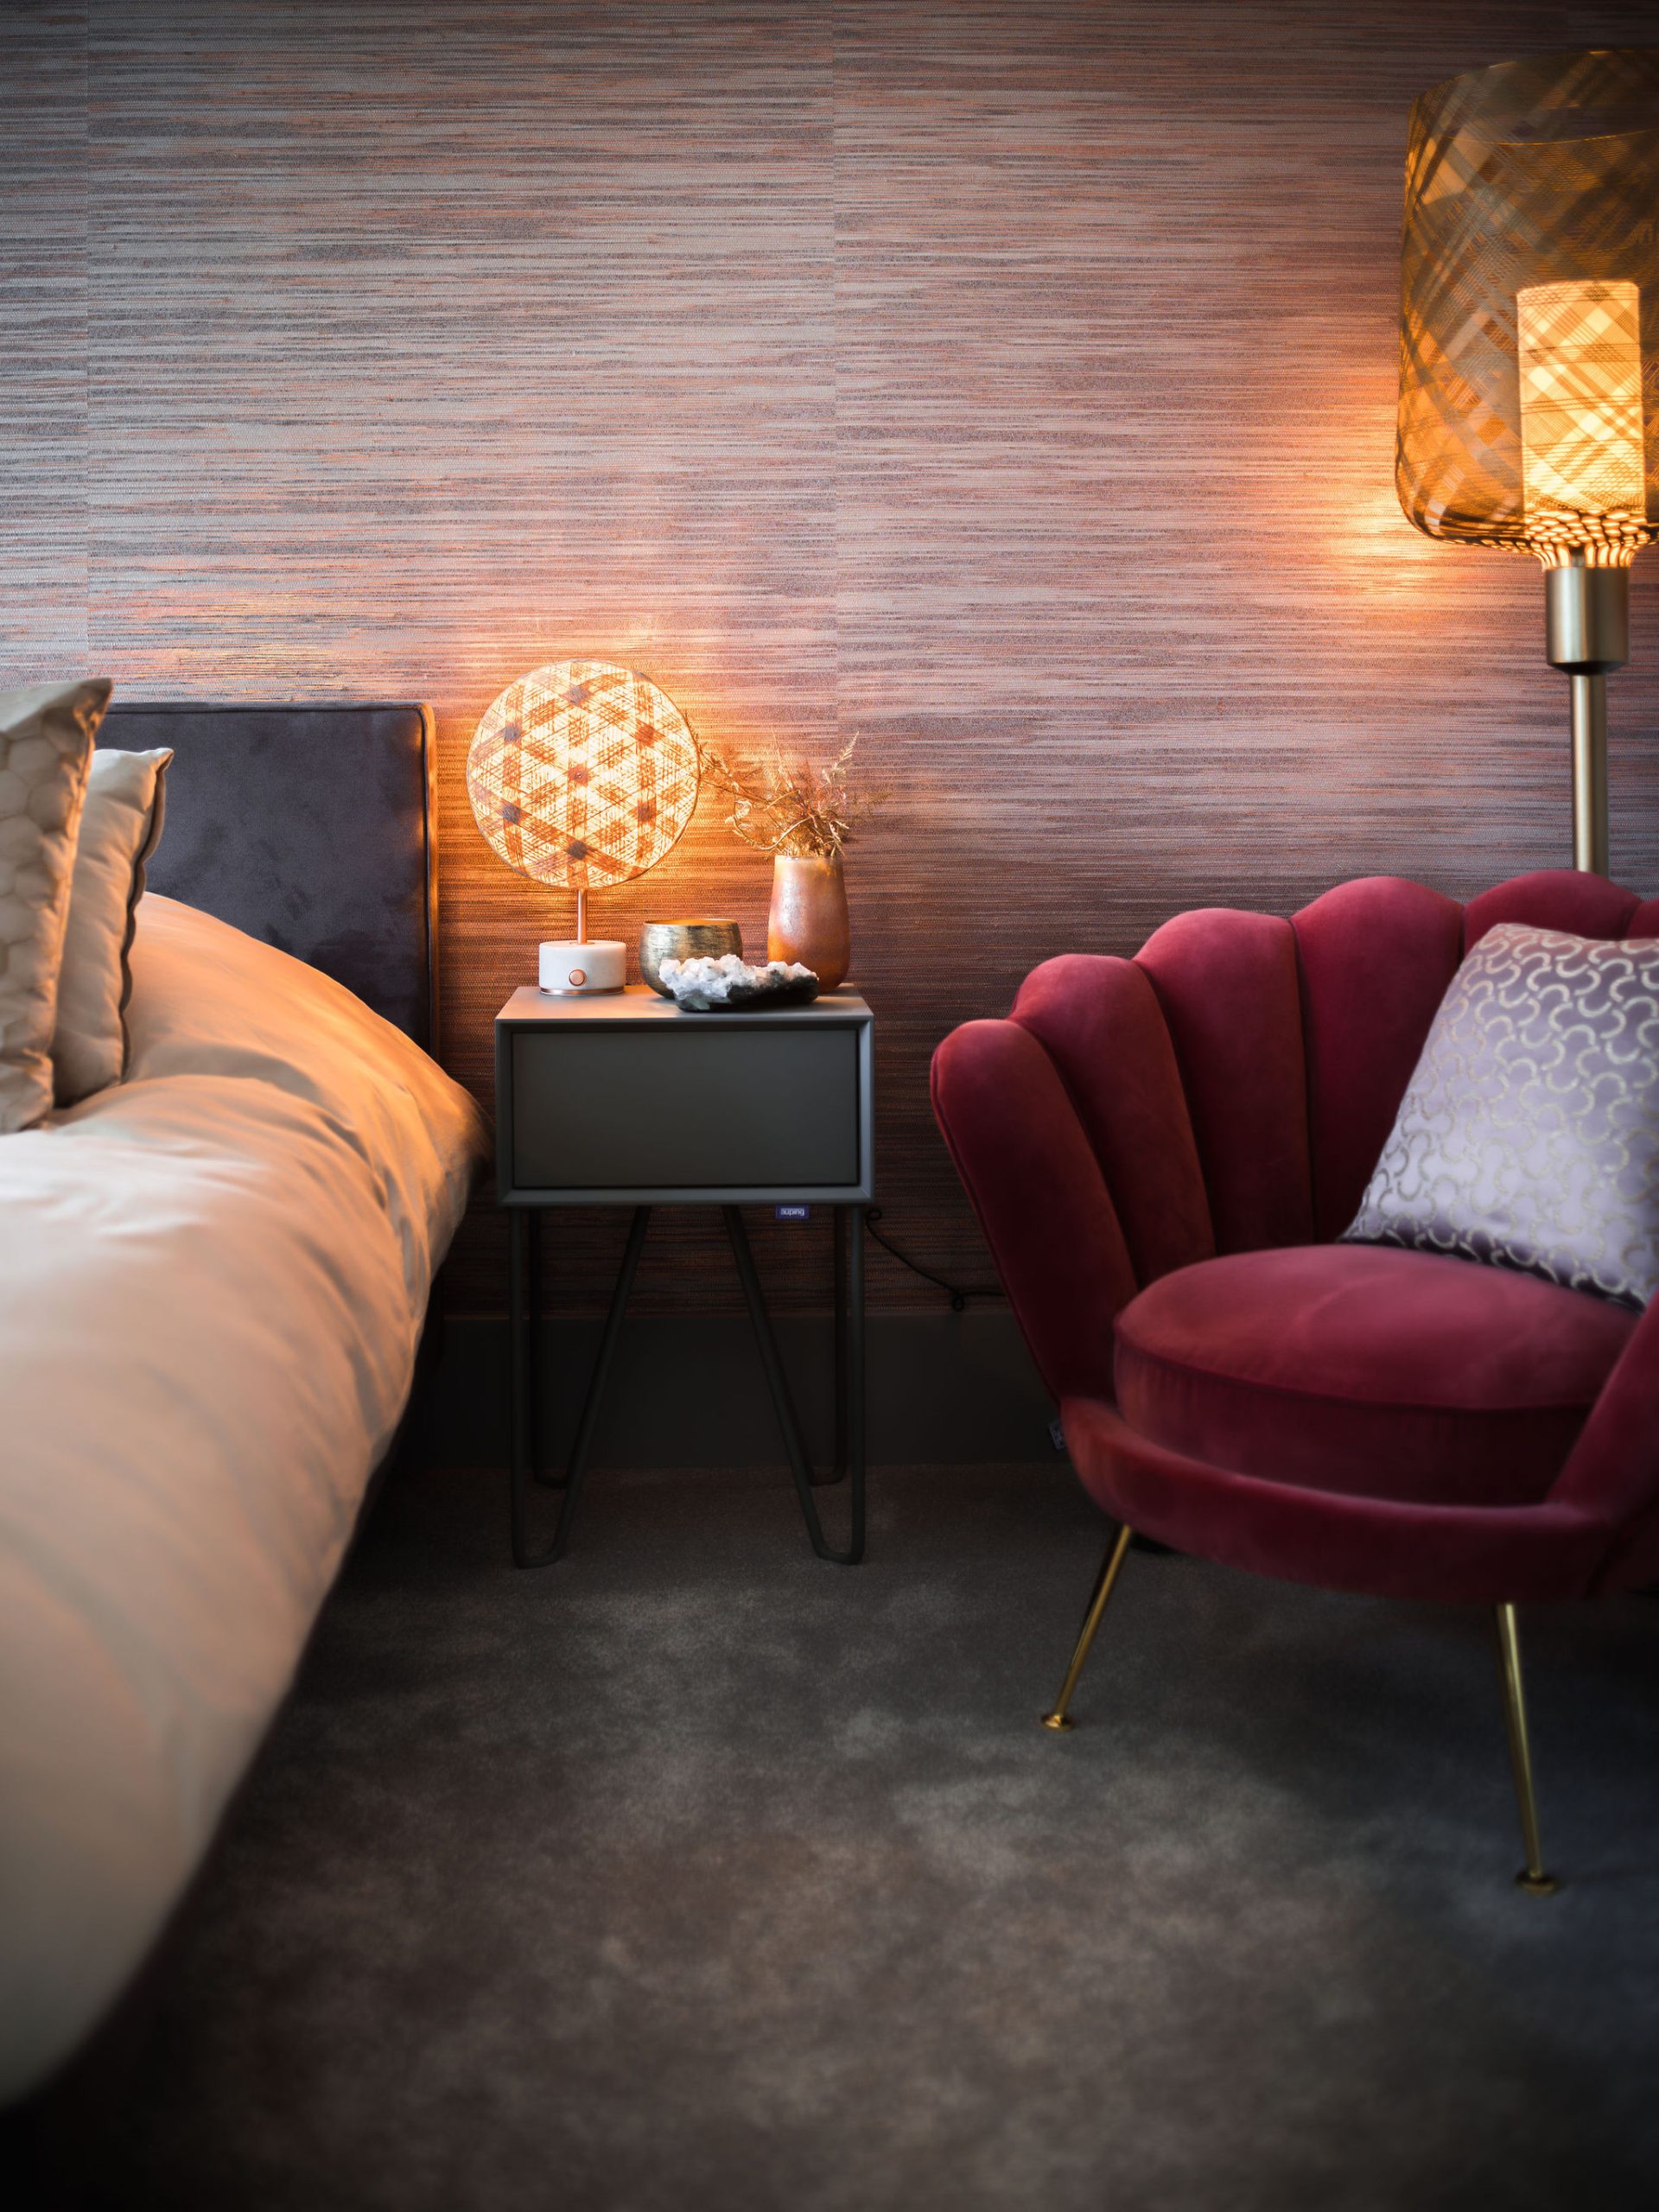 zithoekje in meidenkamer met een rode fluwelen schelpvormige fauteuil, een vloerlamp en styling op het grijze nachtkastje